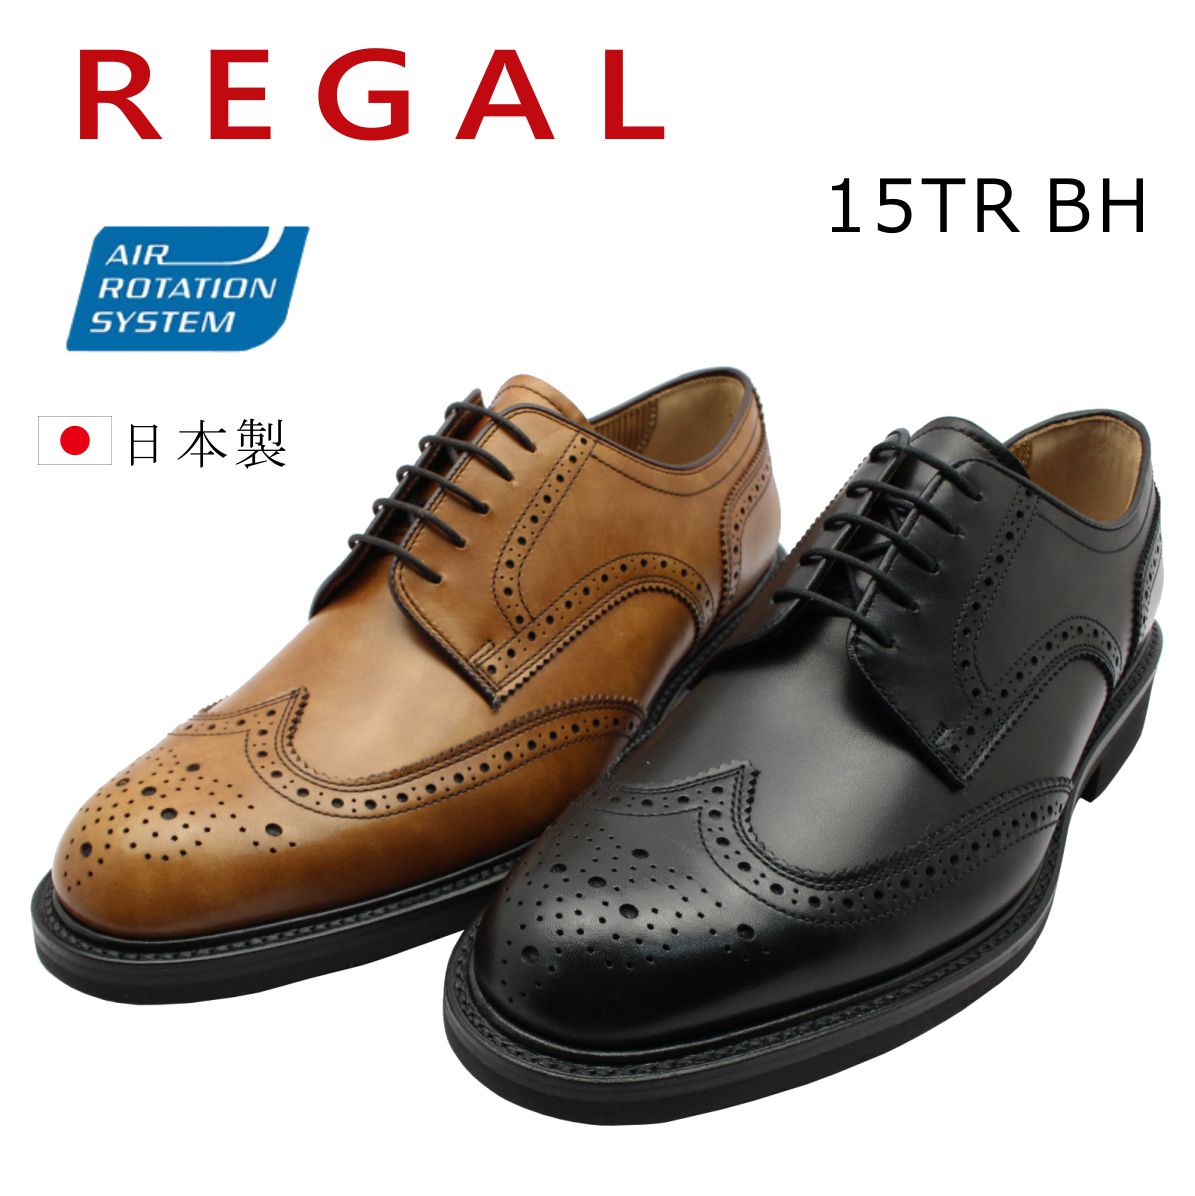 リーガル 靴 メンズ REGAL 15TR BH ビジネスシューズ ウイングチップ 2E 本革 紳士靴 外羽根式 日本製 ブラック ブラウン  :re15trbh:ミッキー靴店 通販 